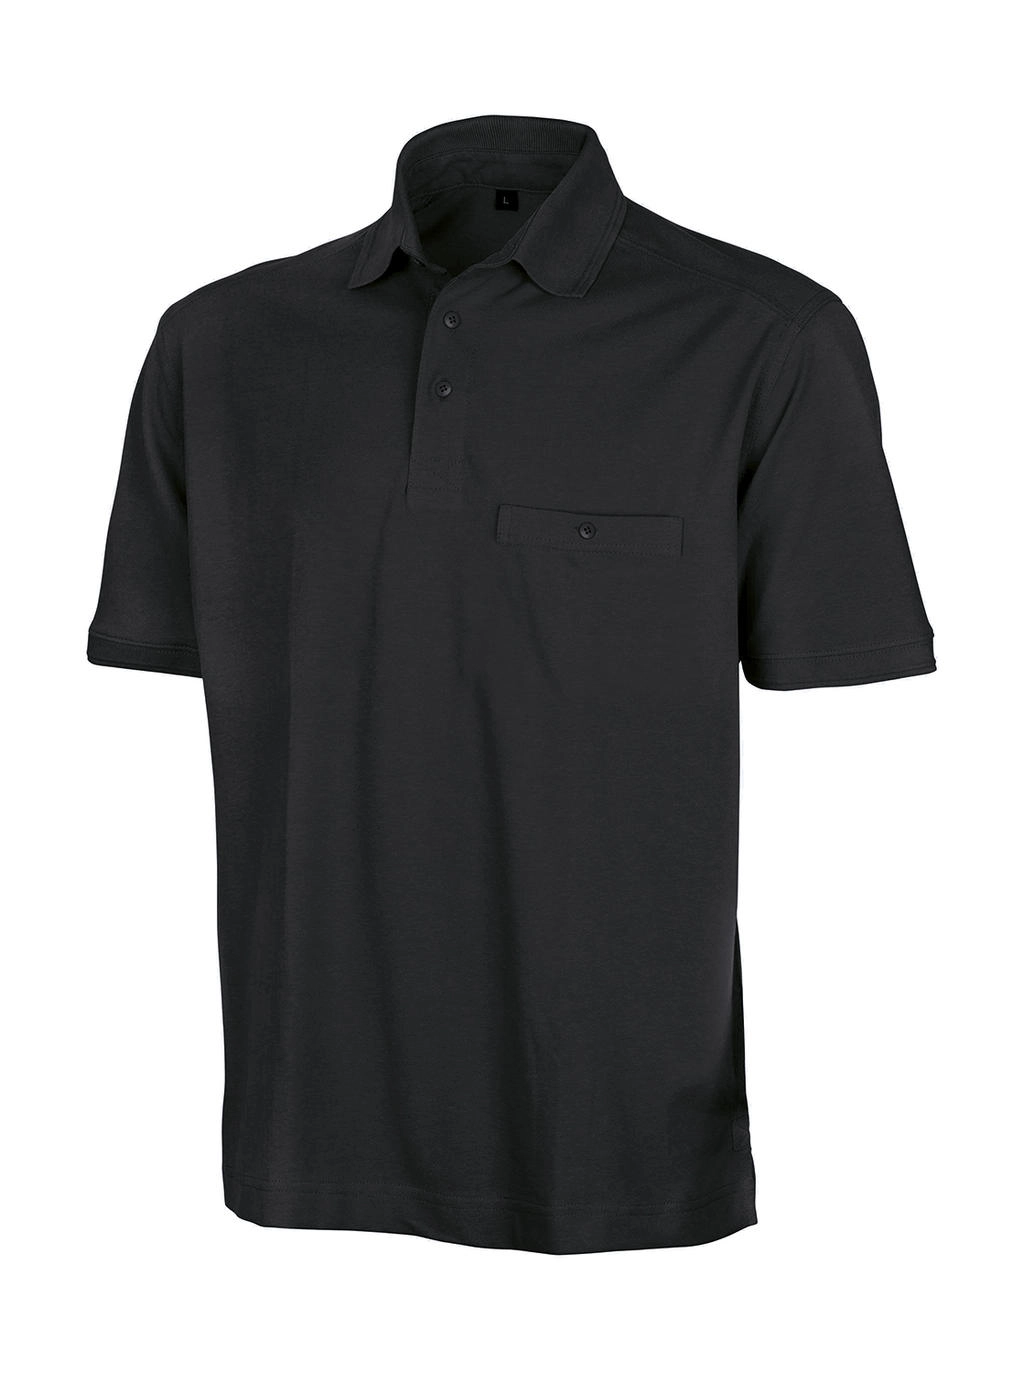 Apex Polo Shirt zum Besticken und Bedrucken in der Farbe Black mit Ihren Logo, Schriftzug oder Motiv.